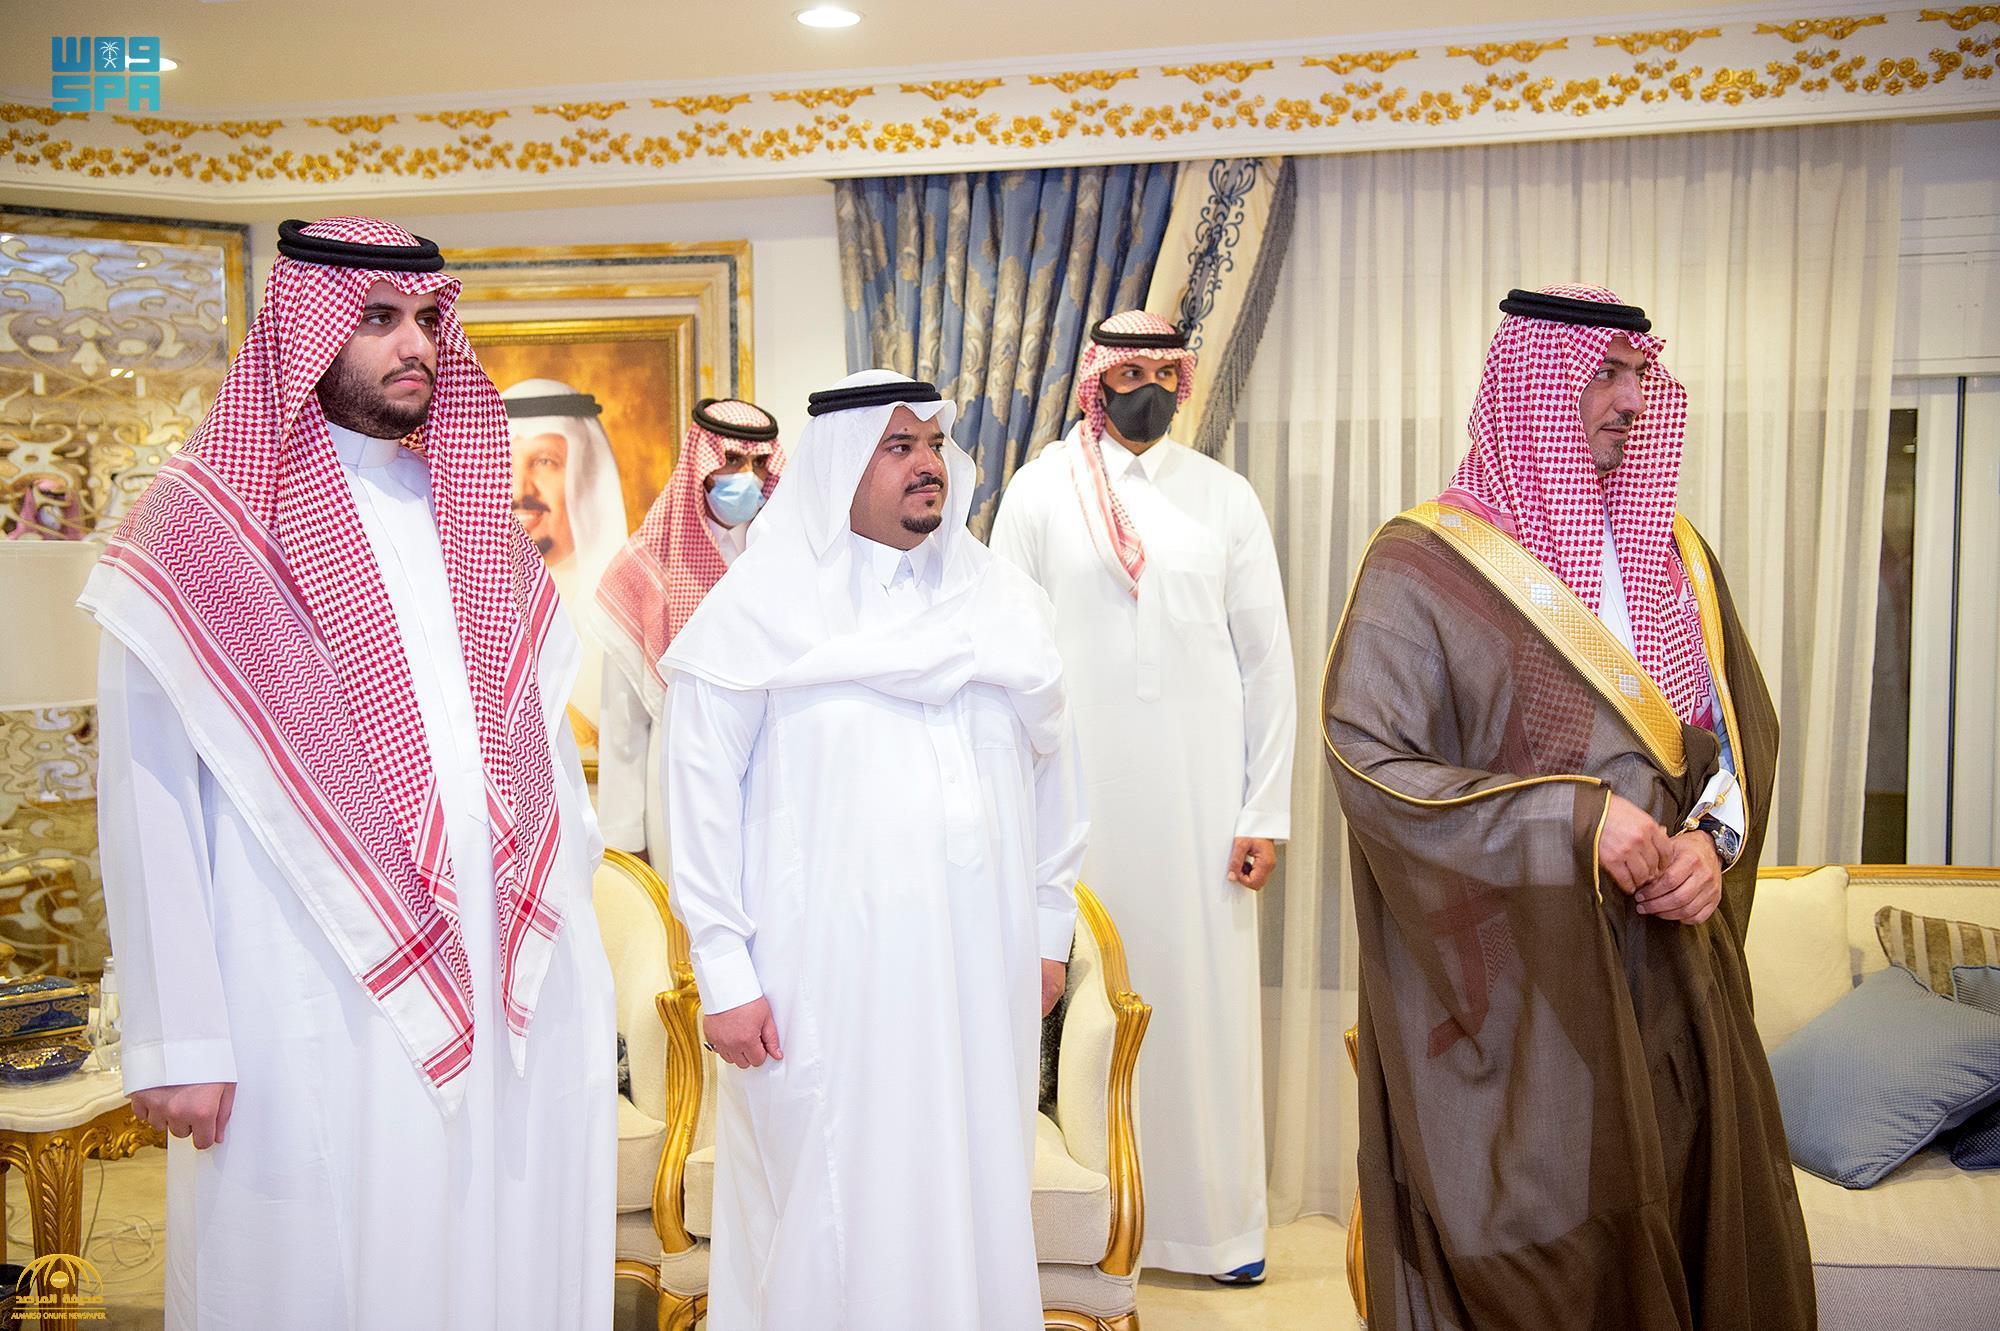 شاهد ..صور من استقبال المعزين أمس الجمعة  في وفاة الأمير سعود بن عبدالرحمن في قصر المربع بالرياض